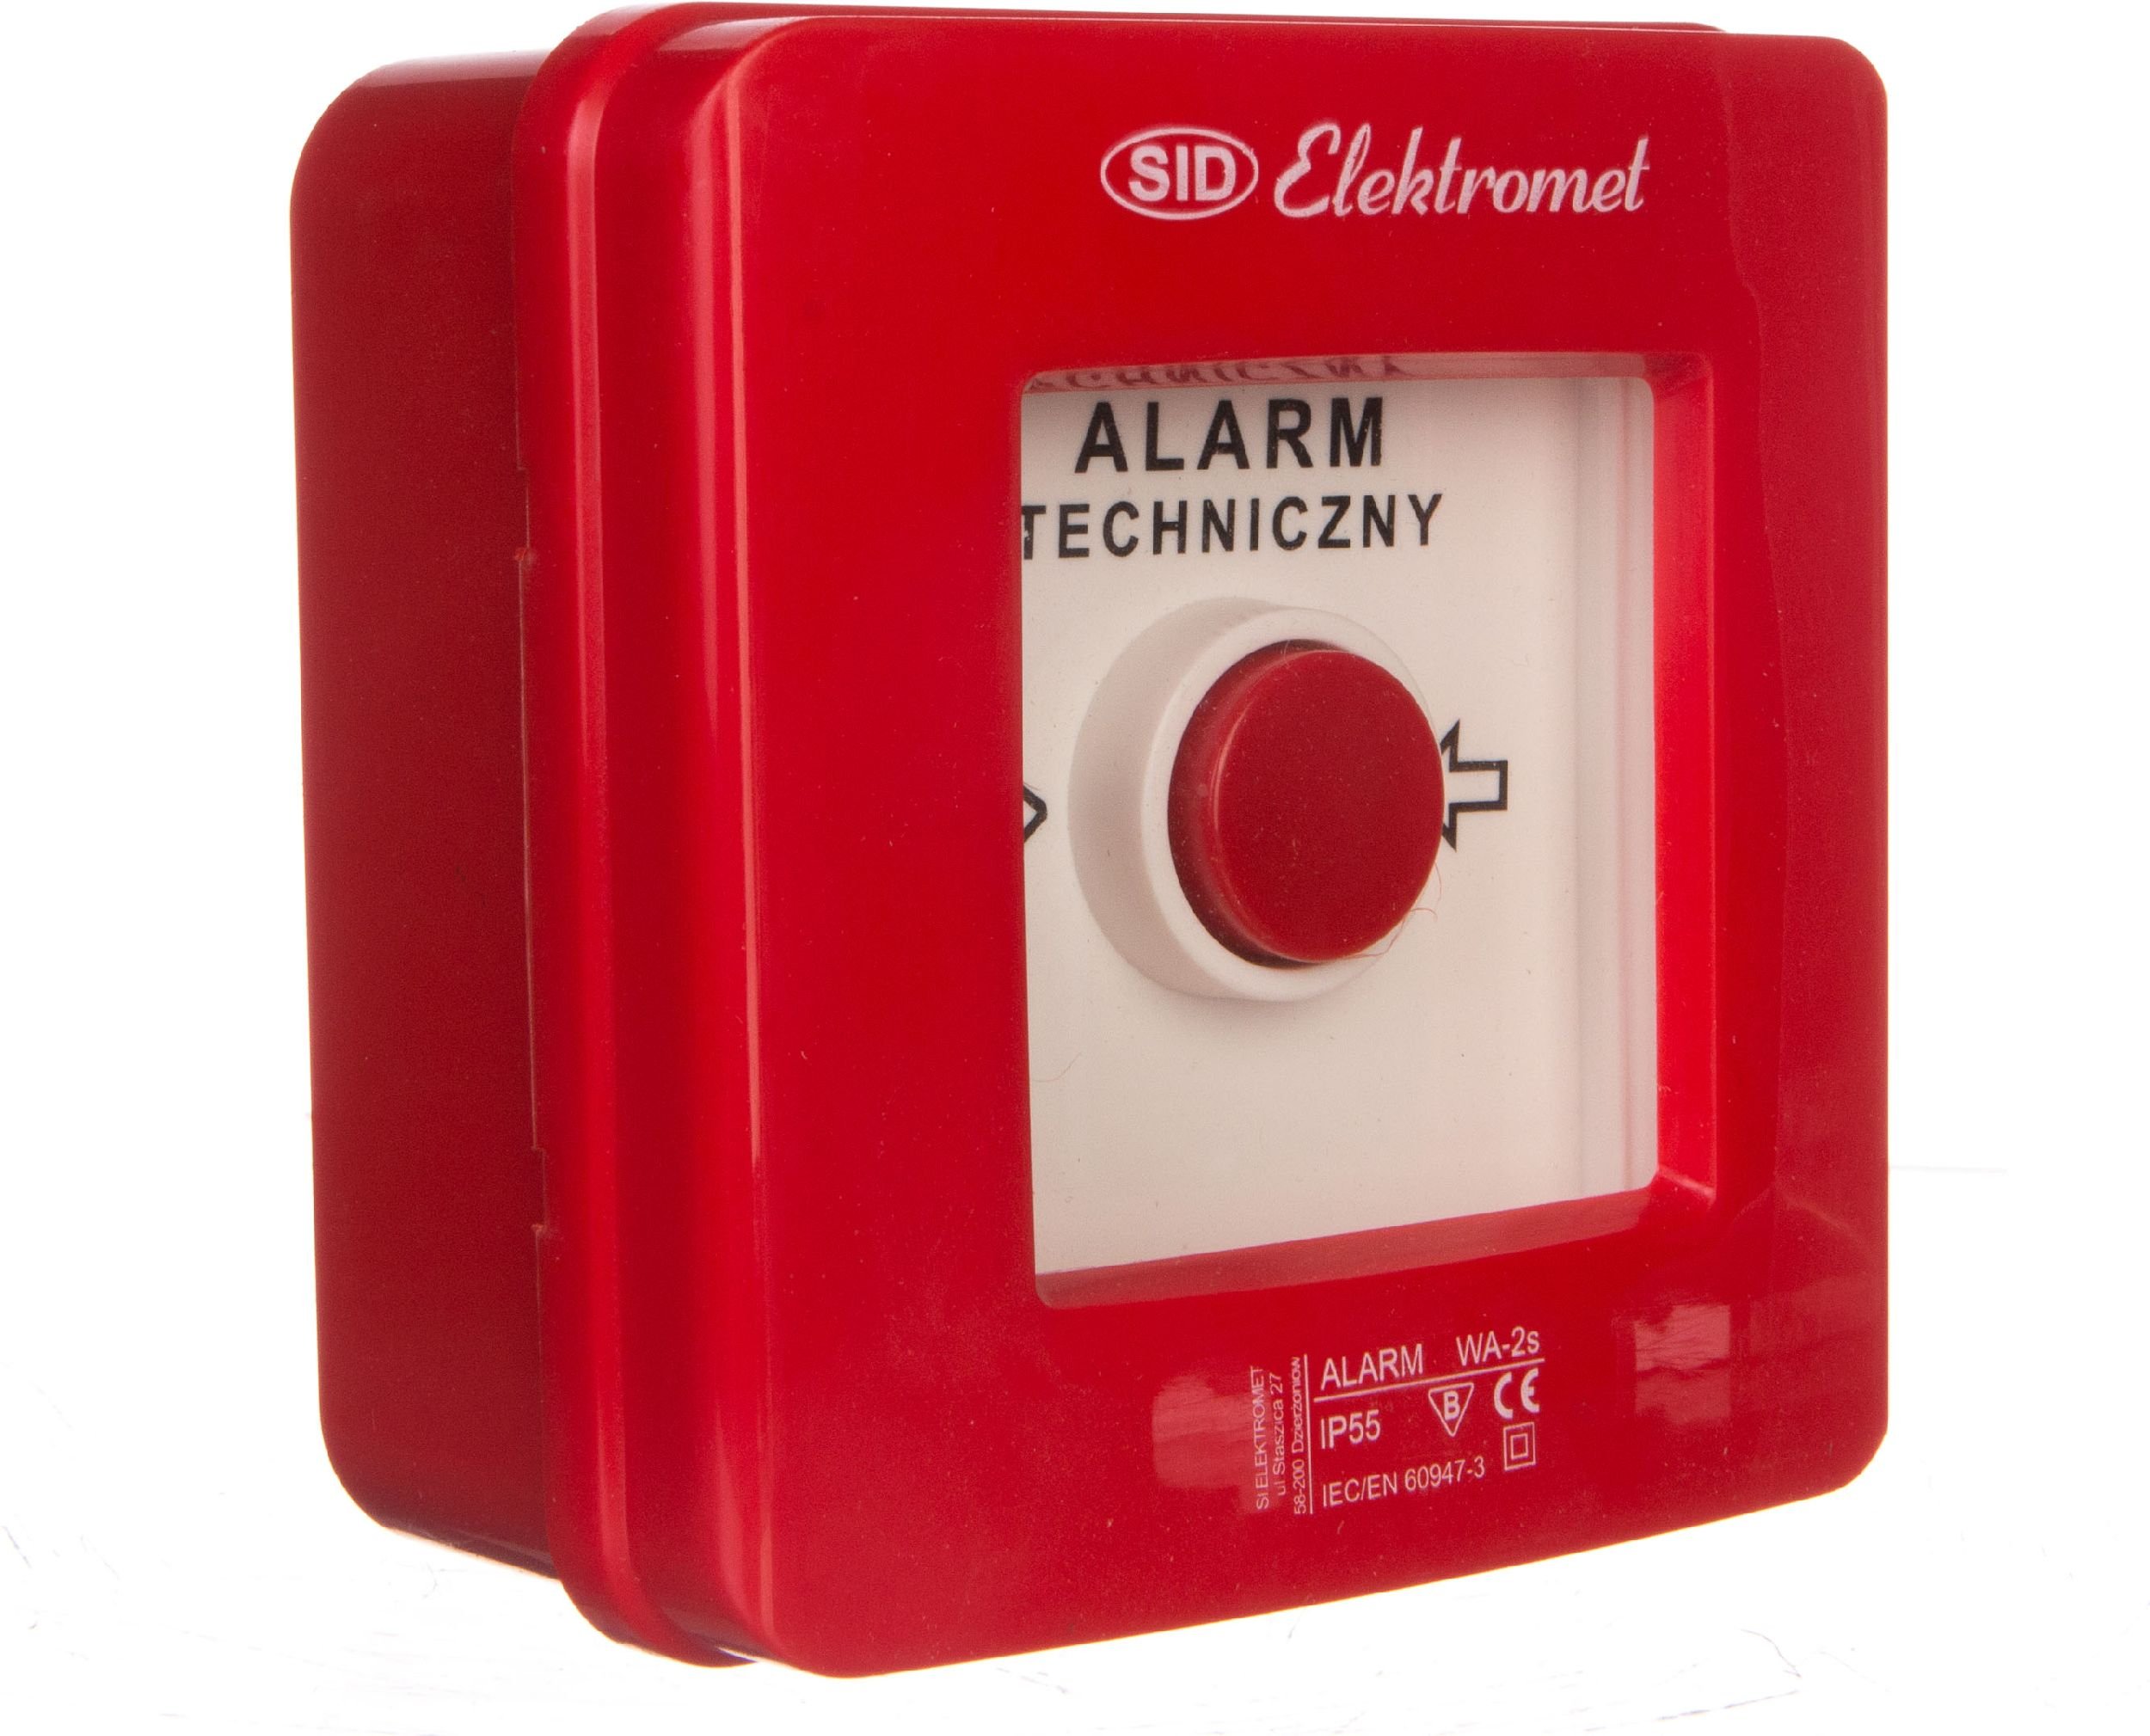 Elektromet Comutator de alarma 2Z 12A /ALARMA TEHNICA/ IP55 WA-2s (921403)